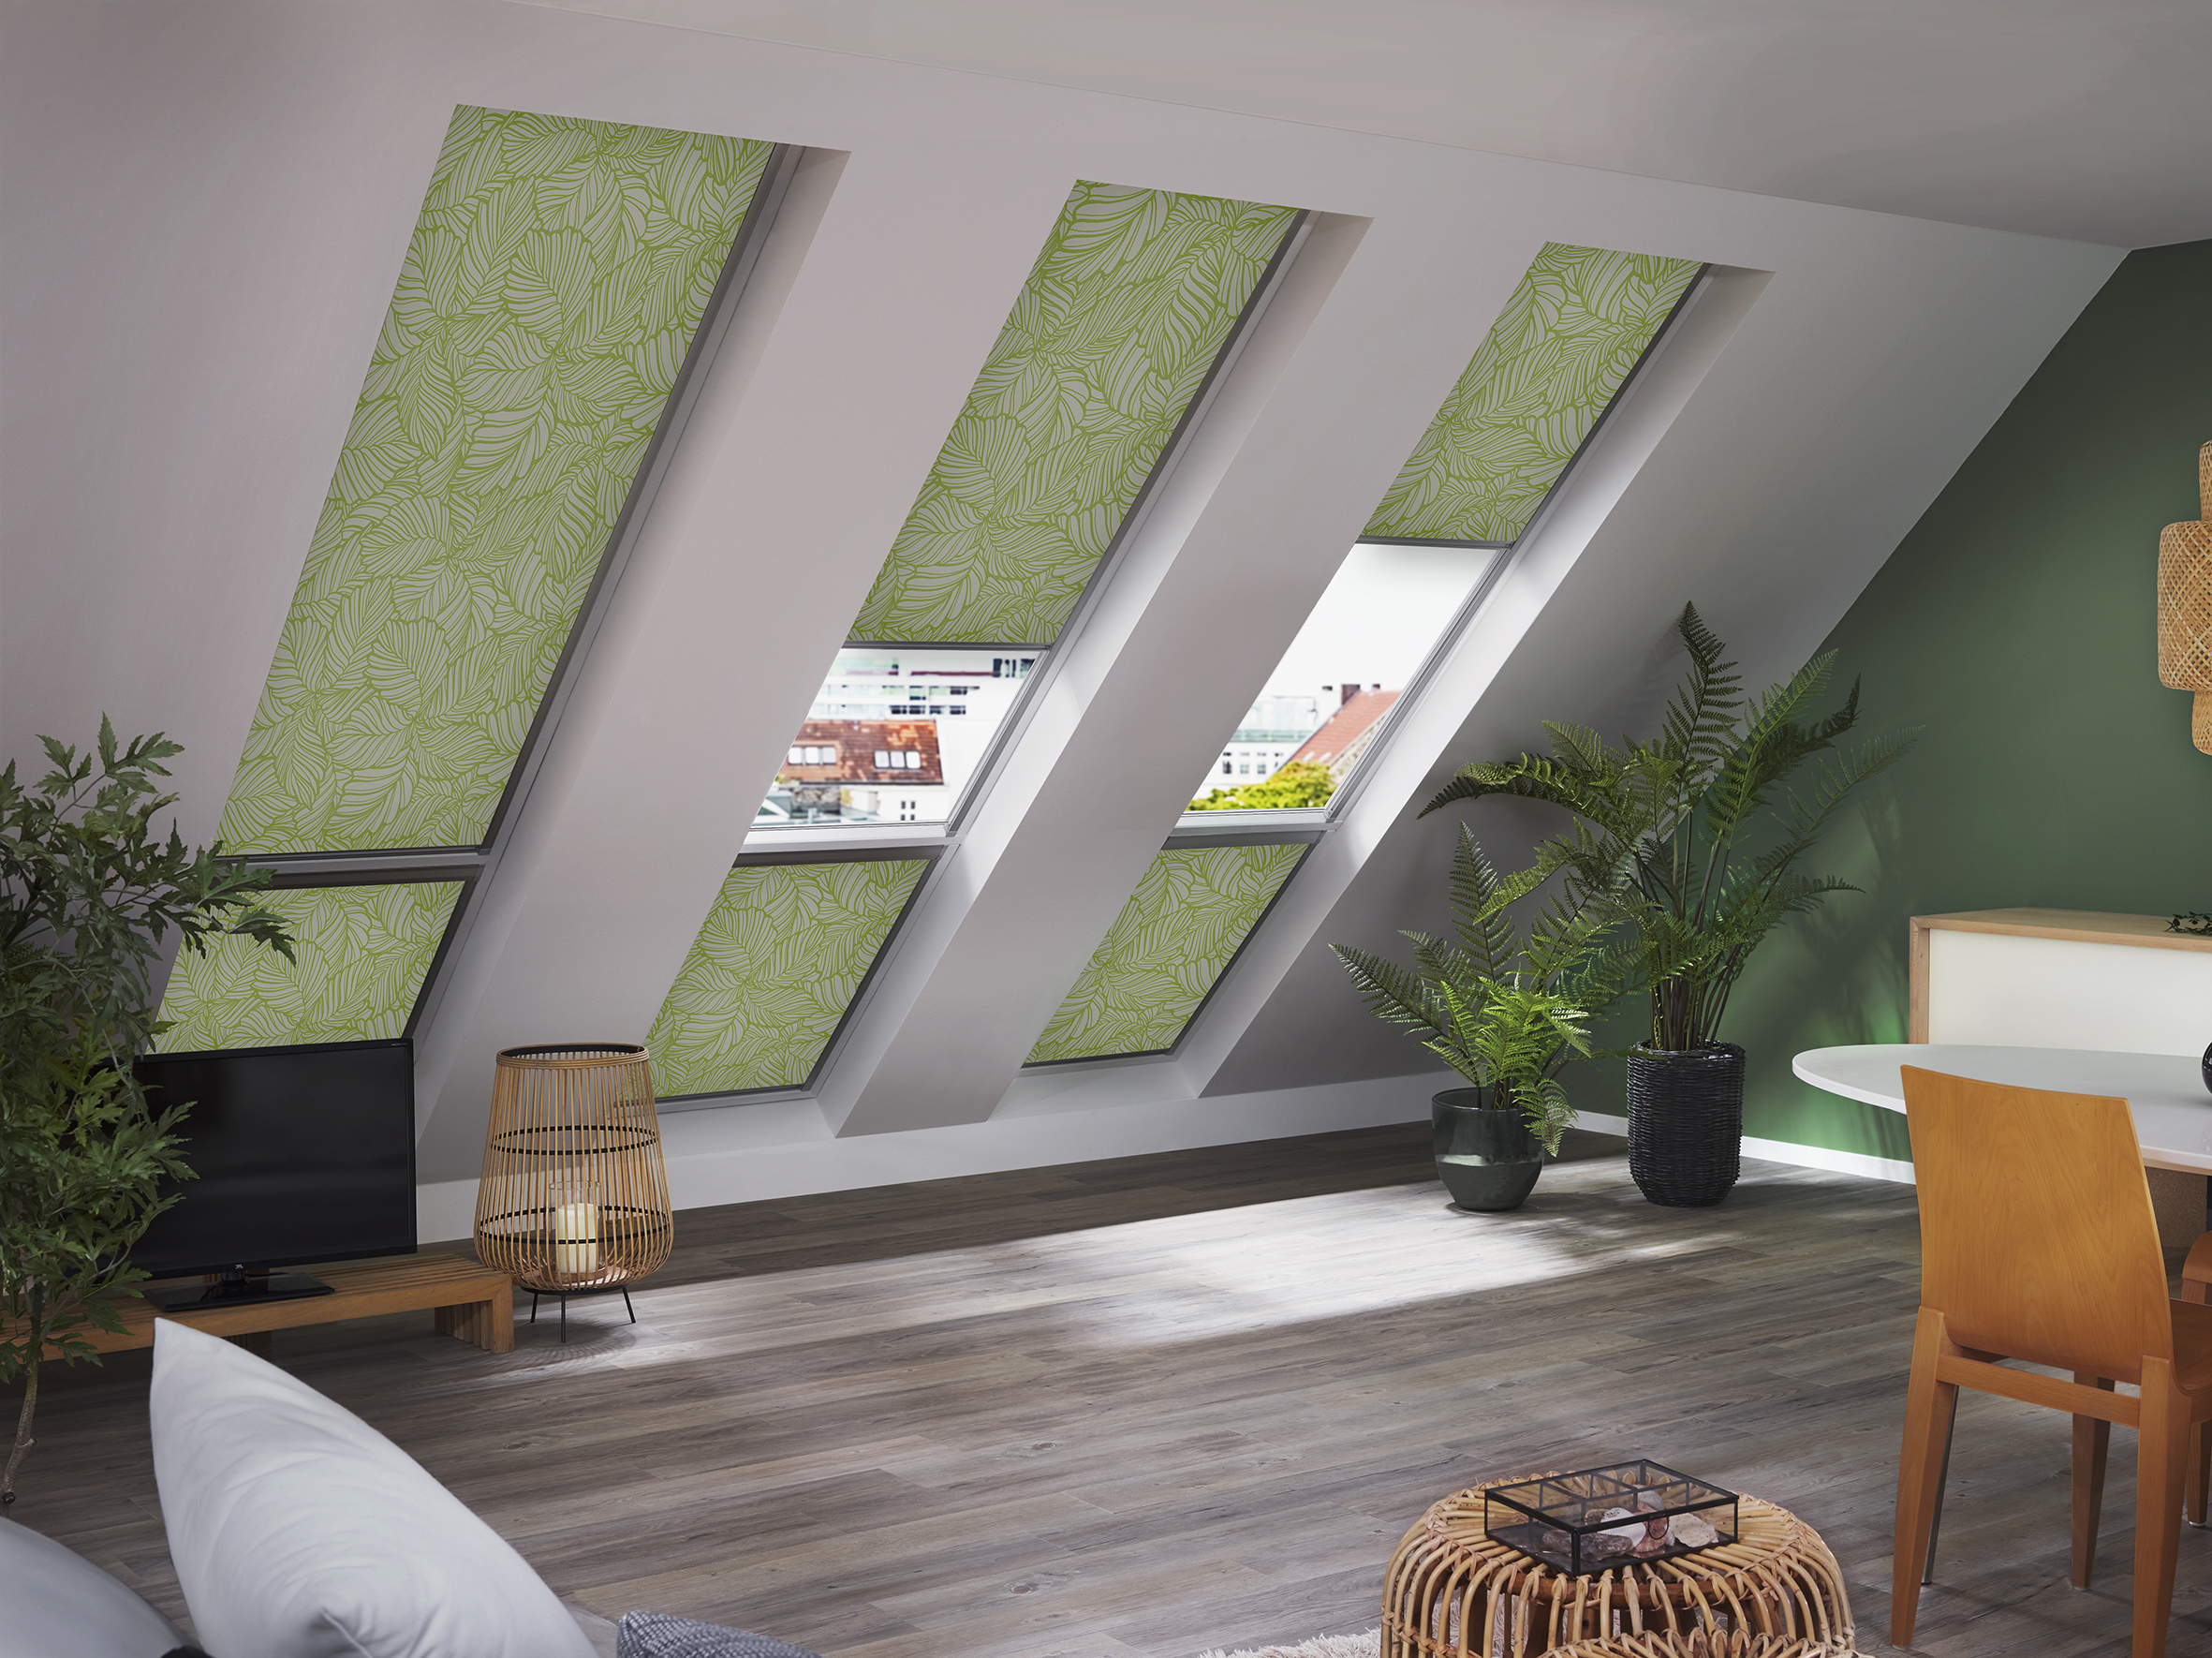 Grün gemustertes Sonnenschutzrollo für Dachflächenfenster zum Sichtschutz im passendem Wohnzimmer. - Schmidt Insektenschutzrahmen GmbH